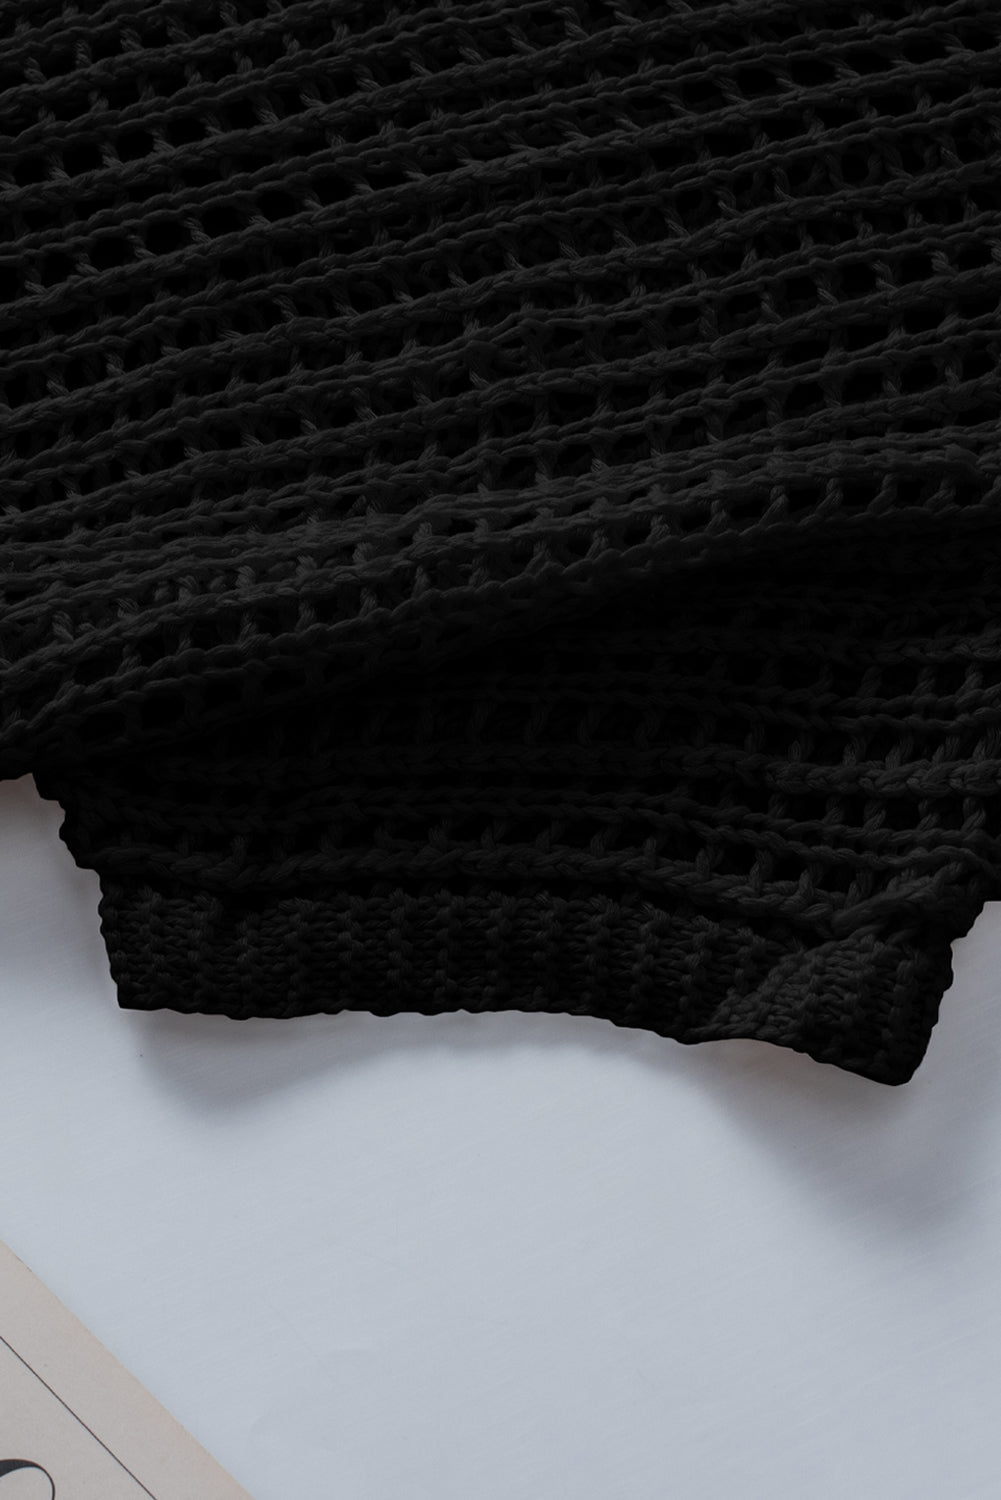 Schwarzes, kurzärmliges Pullover-T-Shirt aus geripptem Netzstrick mit Rundhalsausschnitt